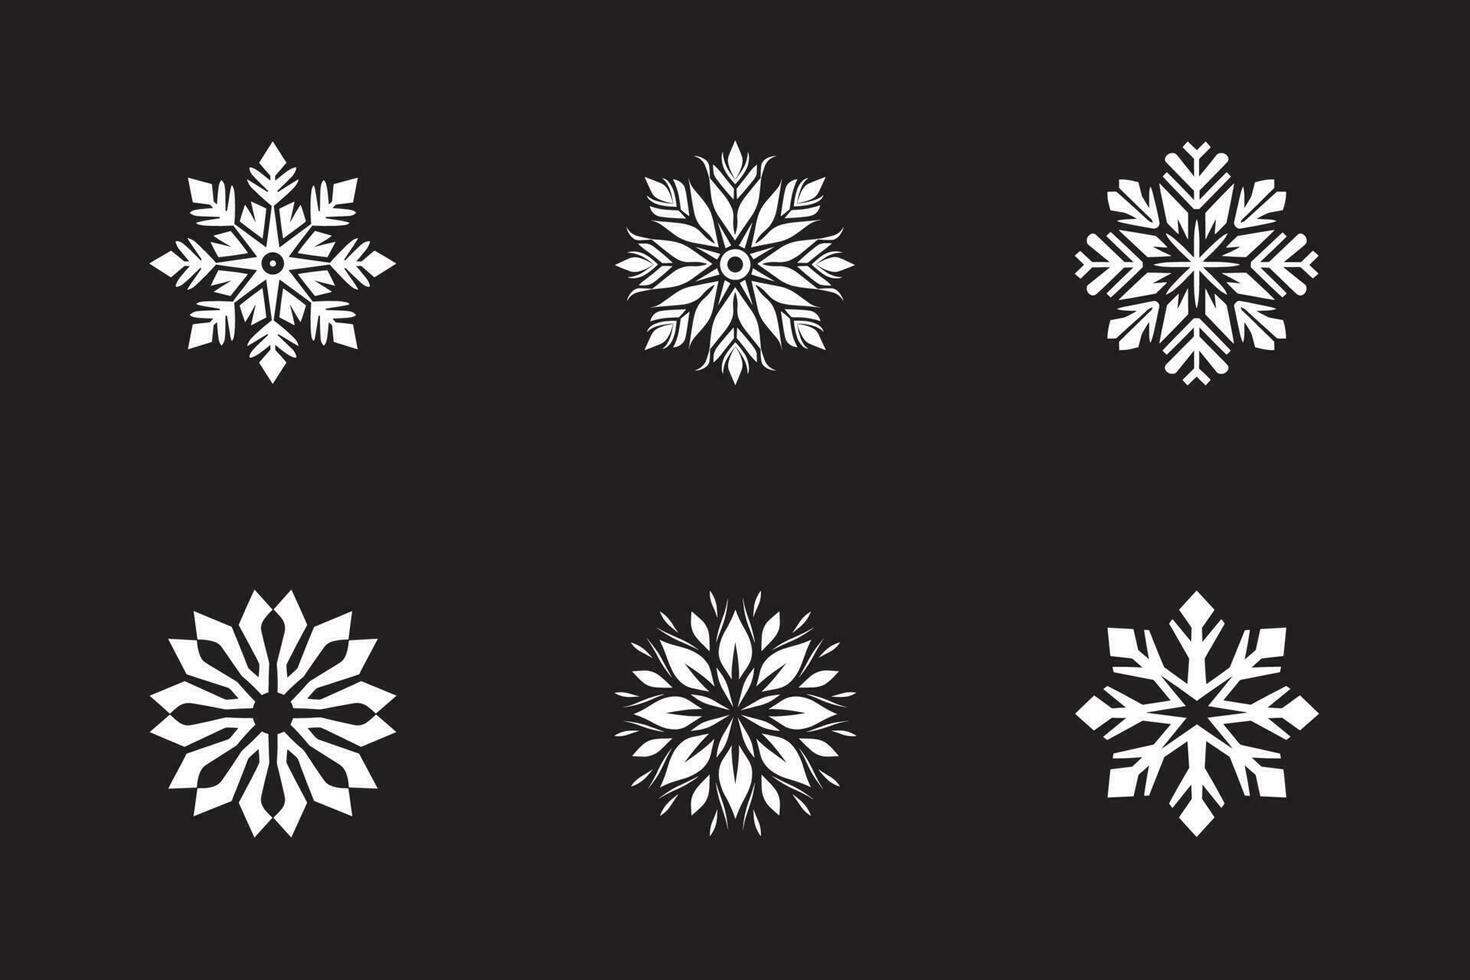 Schneeflocken zu Weihnachten vektor